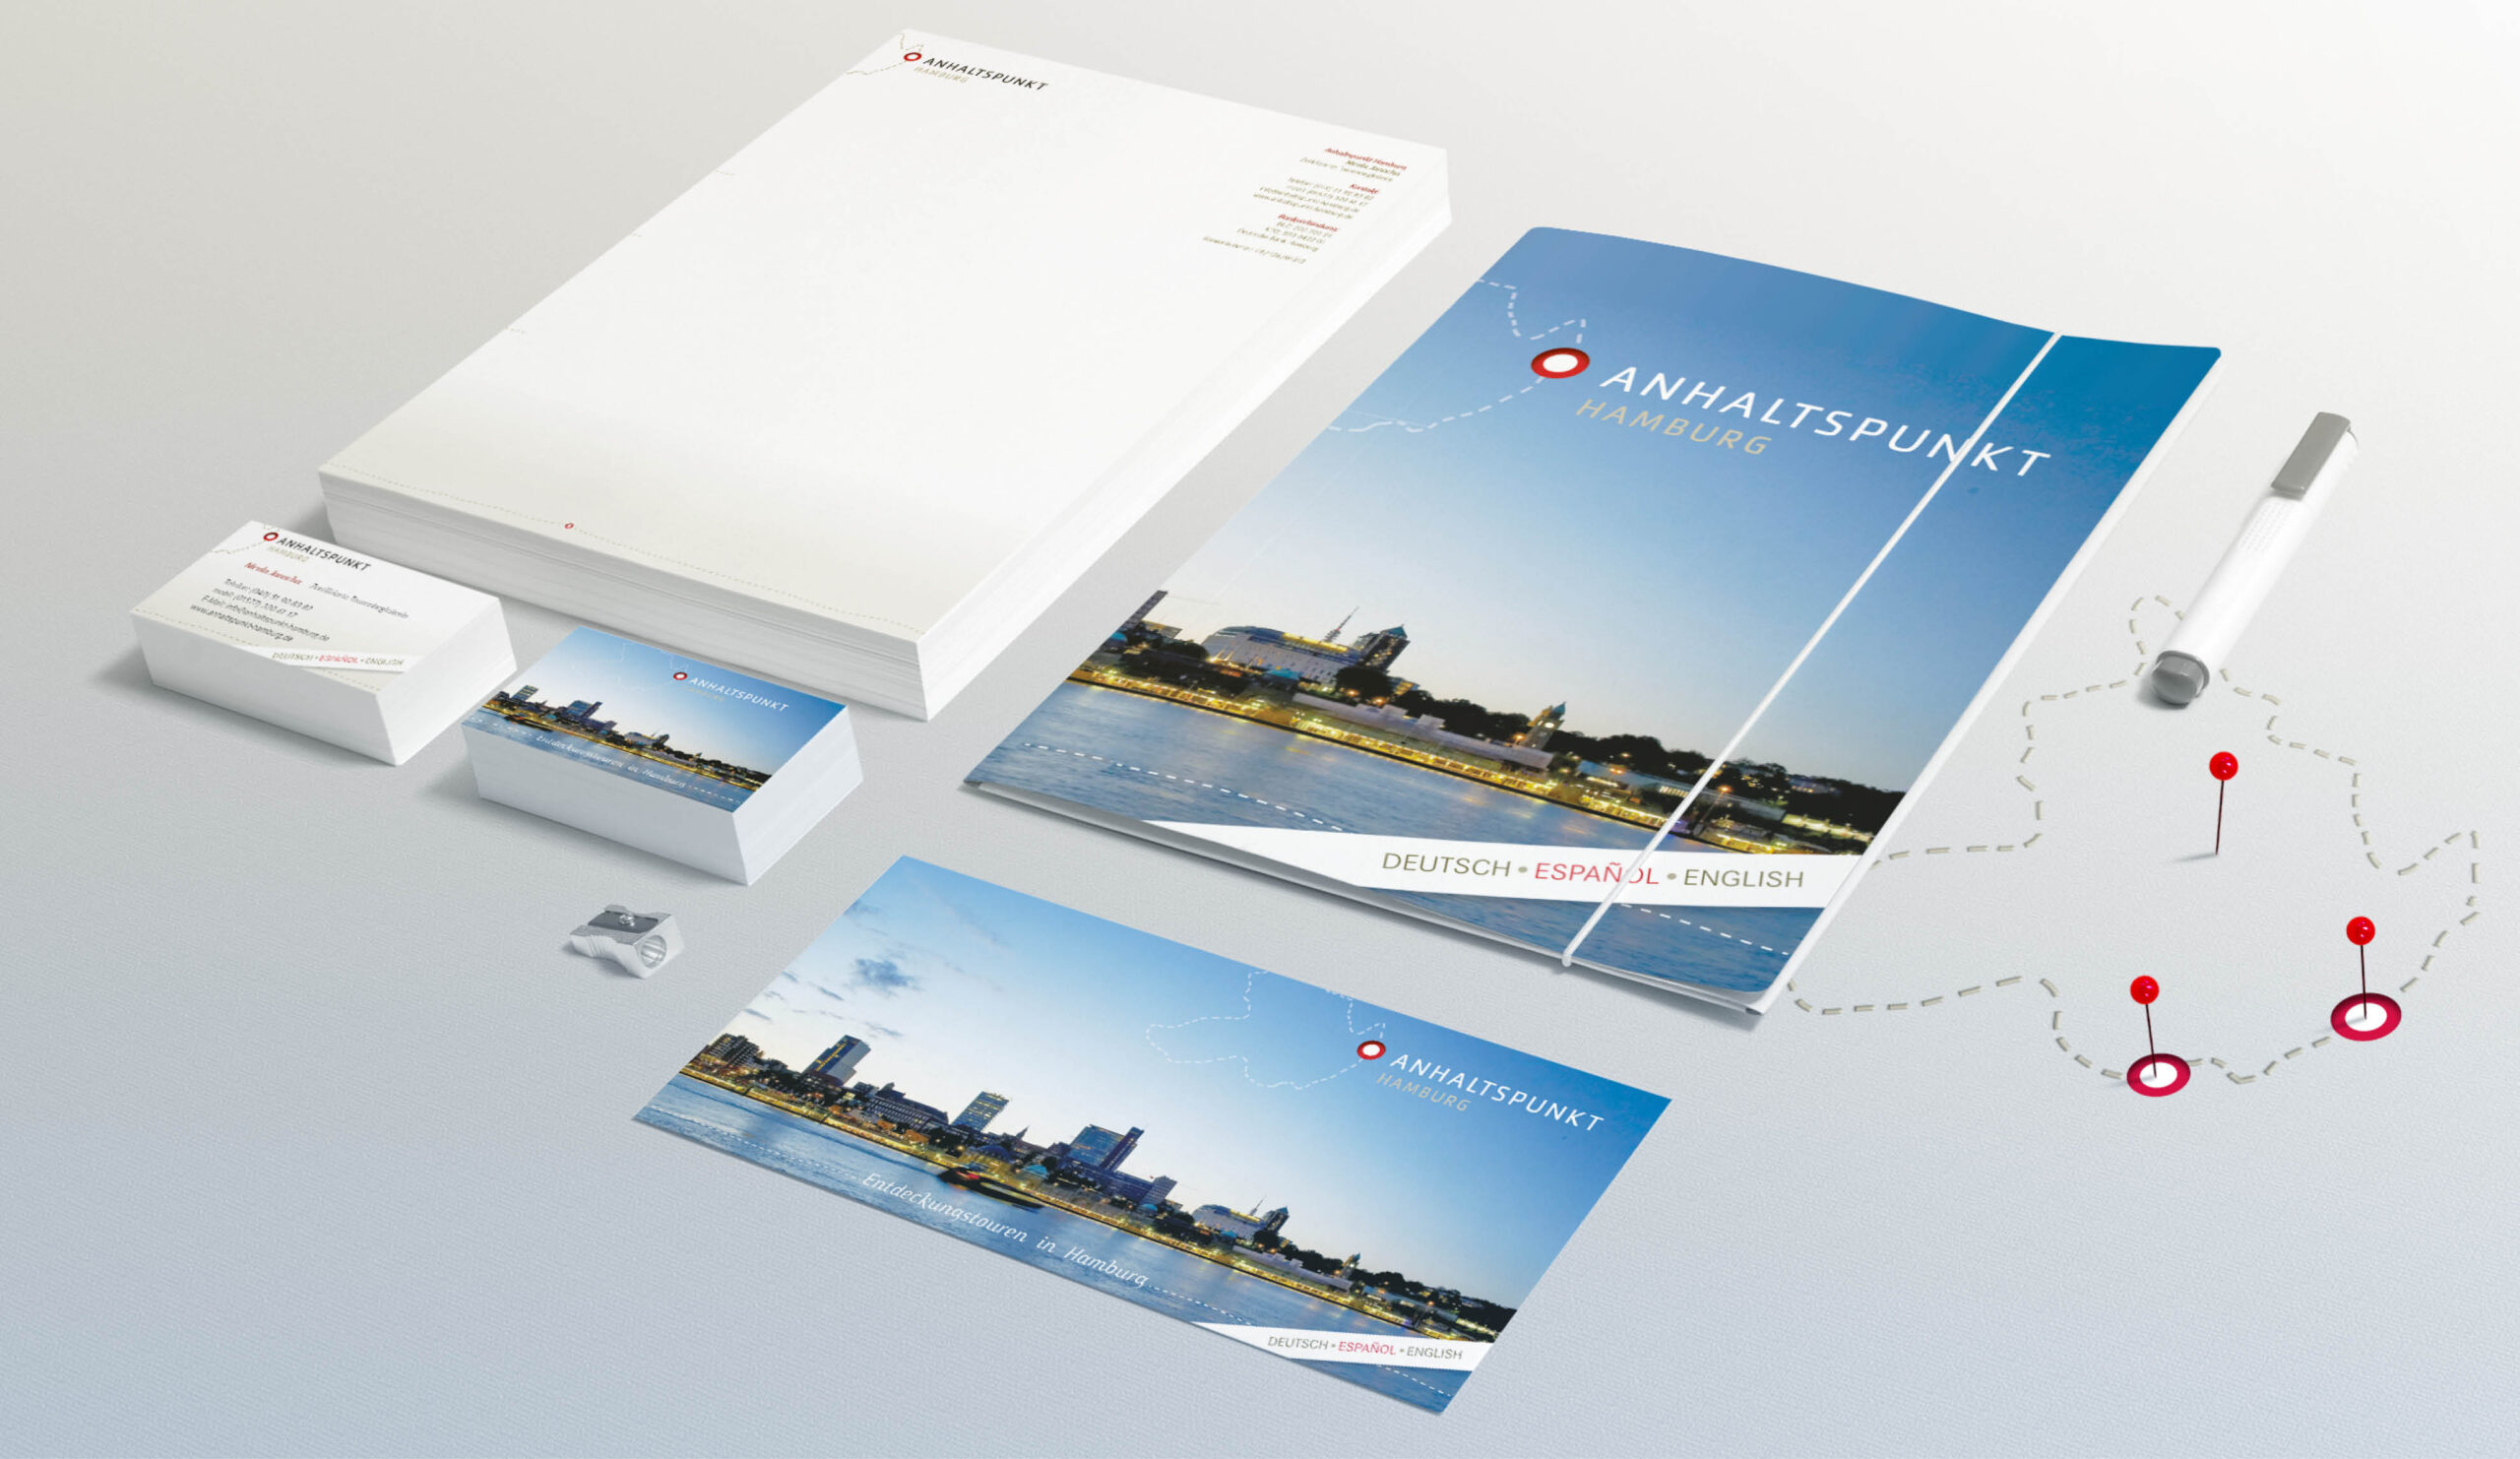 Namensfindung, Logo Design, Corporate Design, Printmaterial und Webdesign für Anhaltspunkt Hamburg